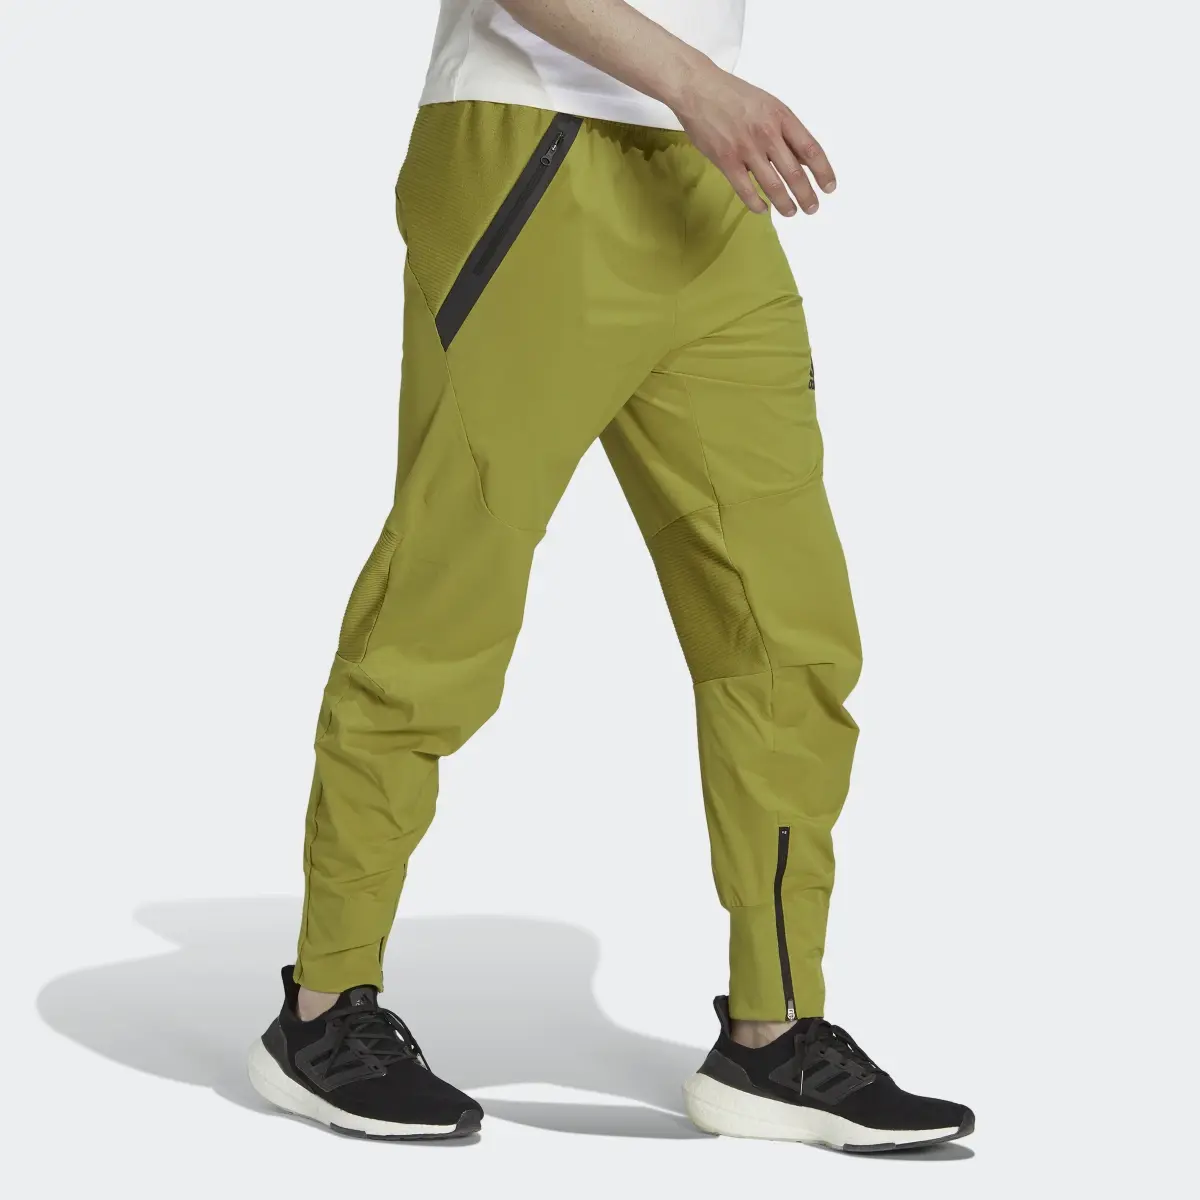 Adidas Pantaloni Designed for Gameday. 3